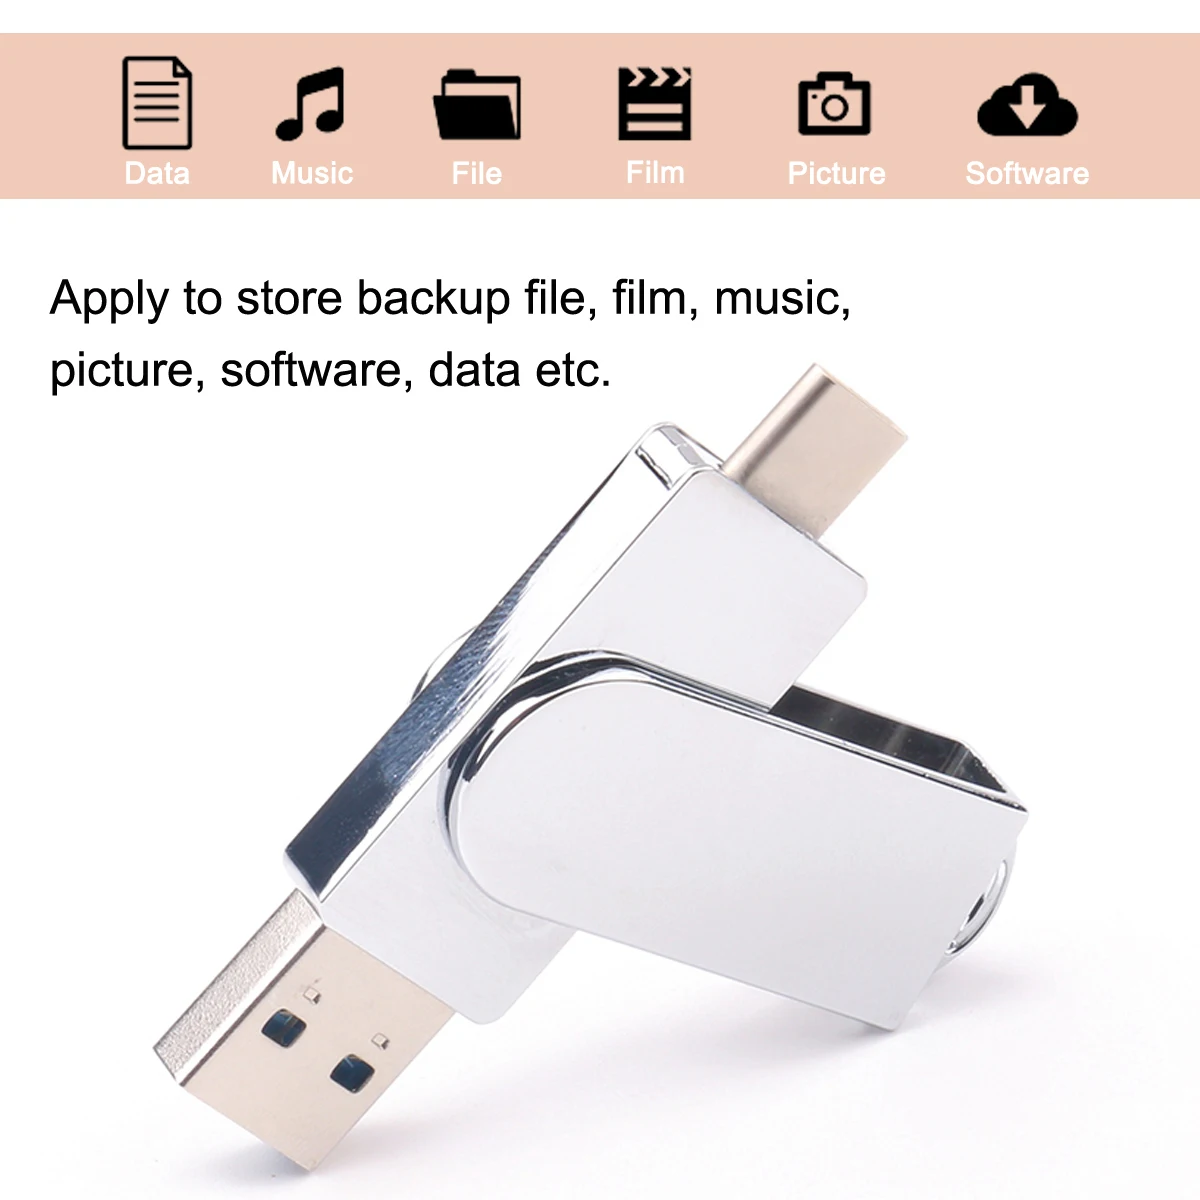 32/64 Гб Тип C металлический поворотный мобильного телефона U диск USB флэш-накопитель OTG USB флэш накопитель для Android телефон компьютер мини-флеш-накопитель флешка - Цвет: Серебристый